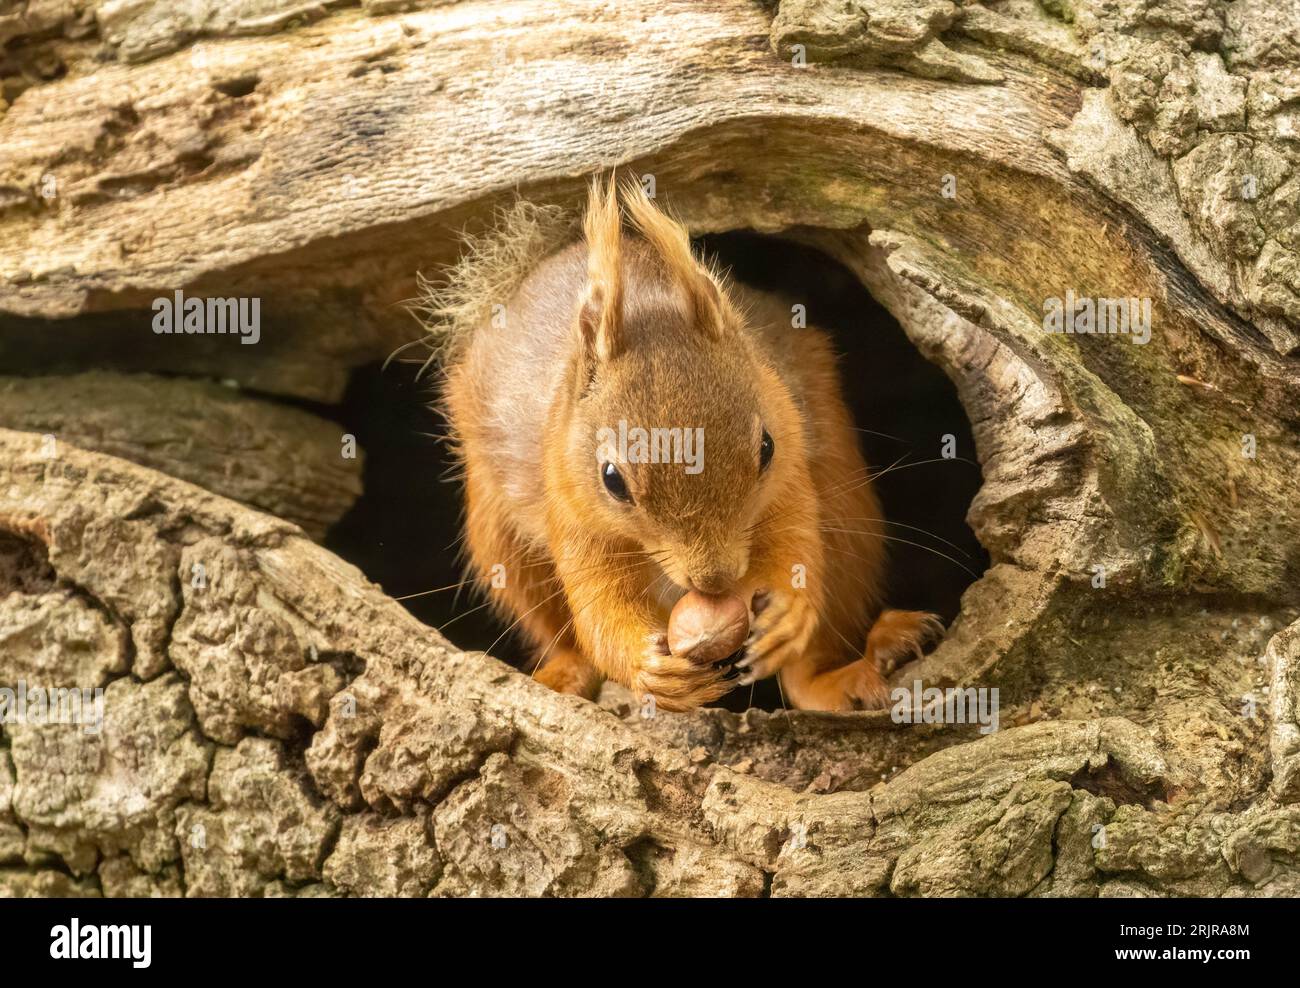 Ein kleines, braunes Eichhörnchen thront auf einem hölzernen Baumstamm und blickt aus einem Loch in der Rinde Stockfoto